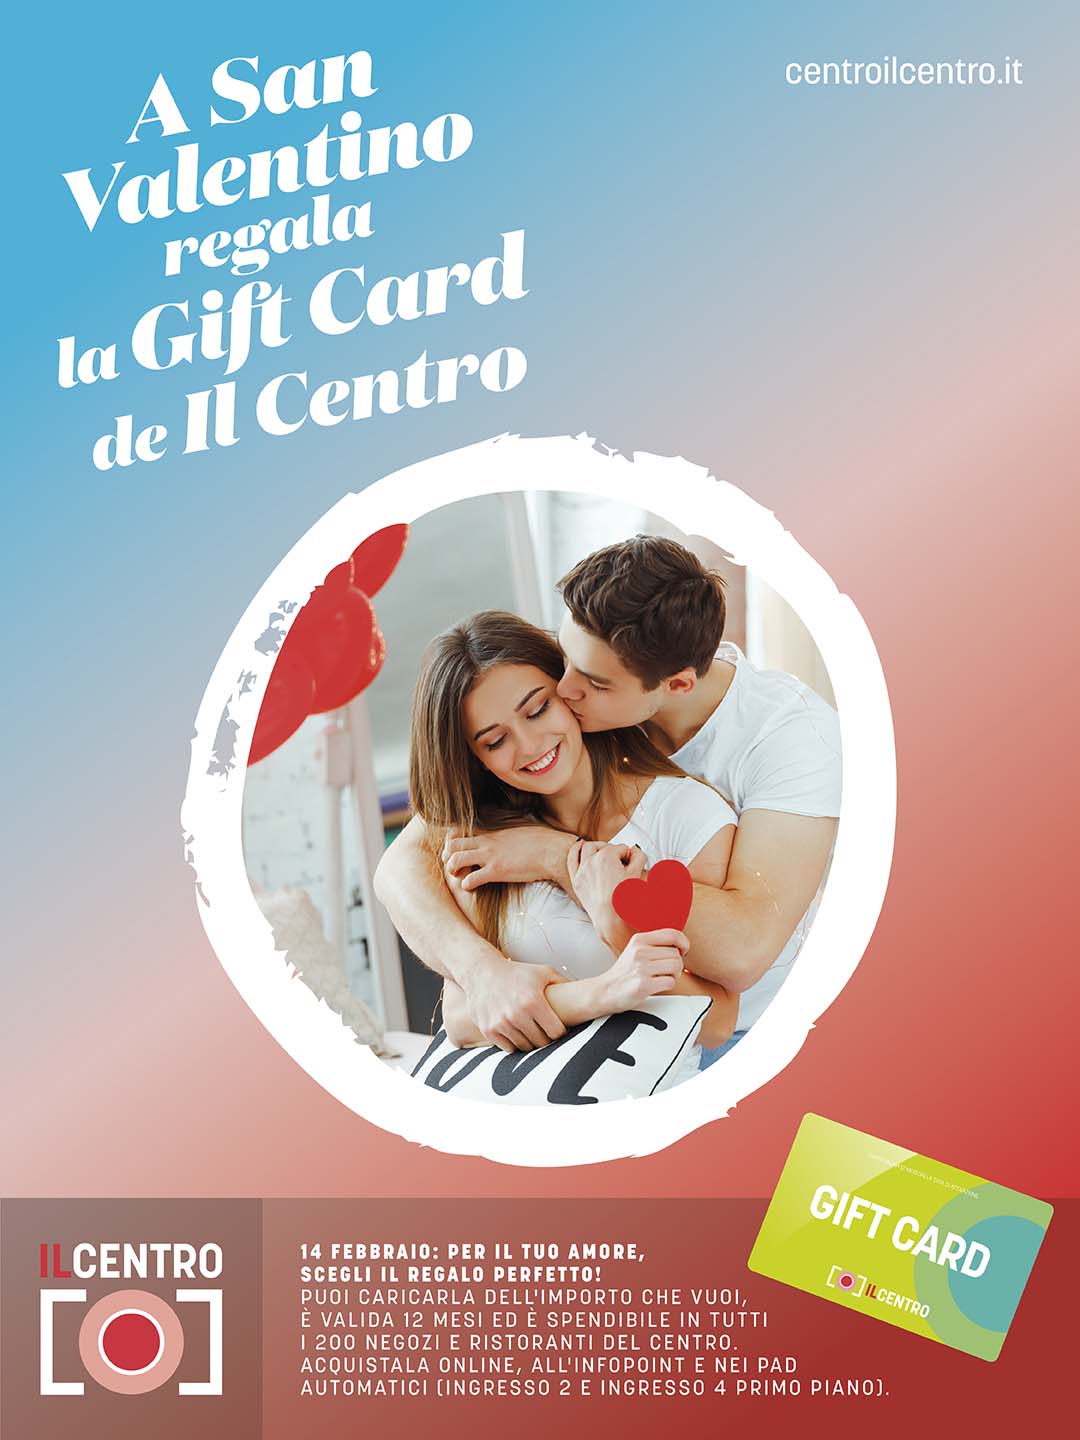 IL CENTRO Arese - E' ARRIVATA LA GIFT CARD ECO-FRIENDLY PER SAN VALENTINO